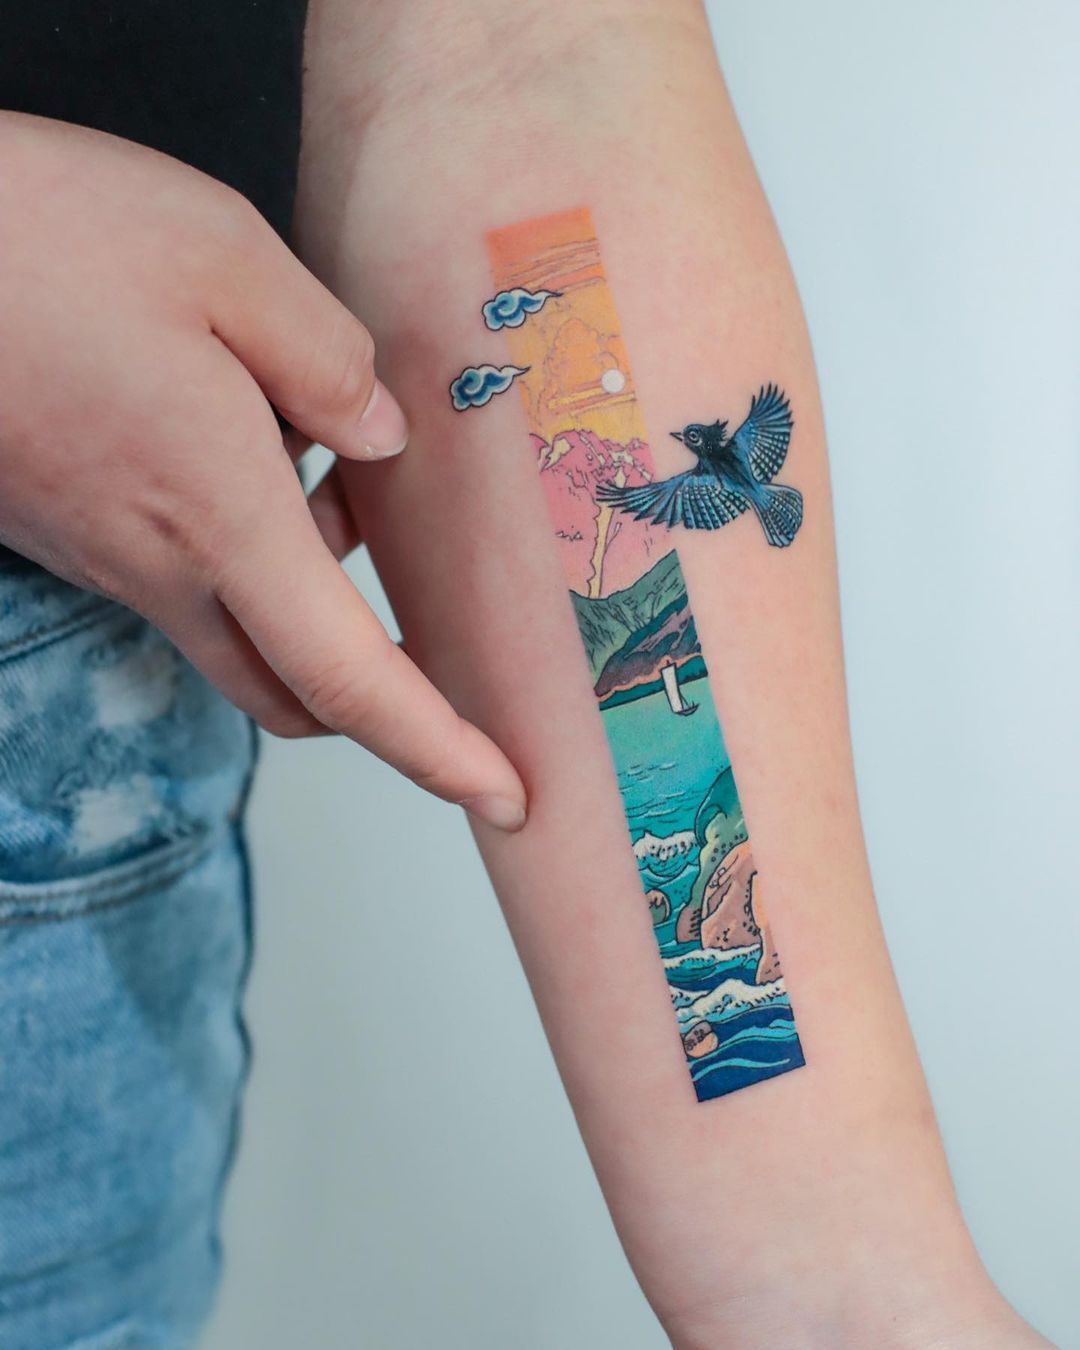 Delicate Watercolor Tattoos Look Like Beautiful Paintings on Skin